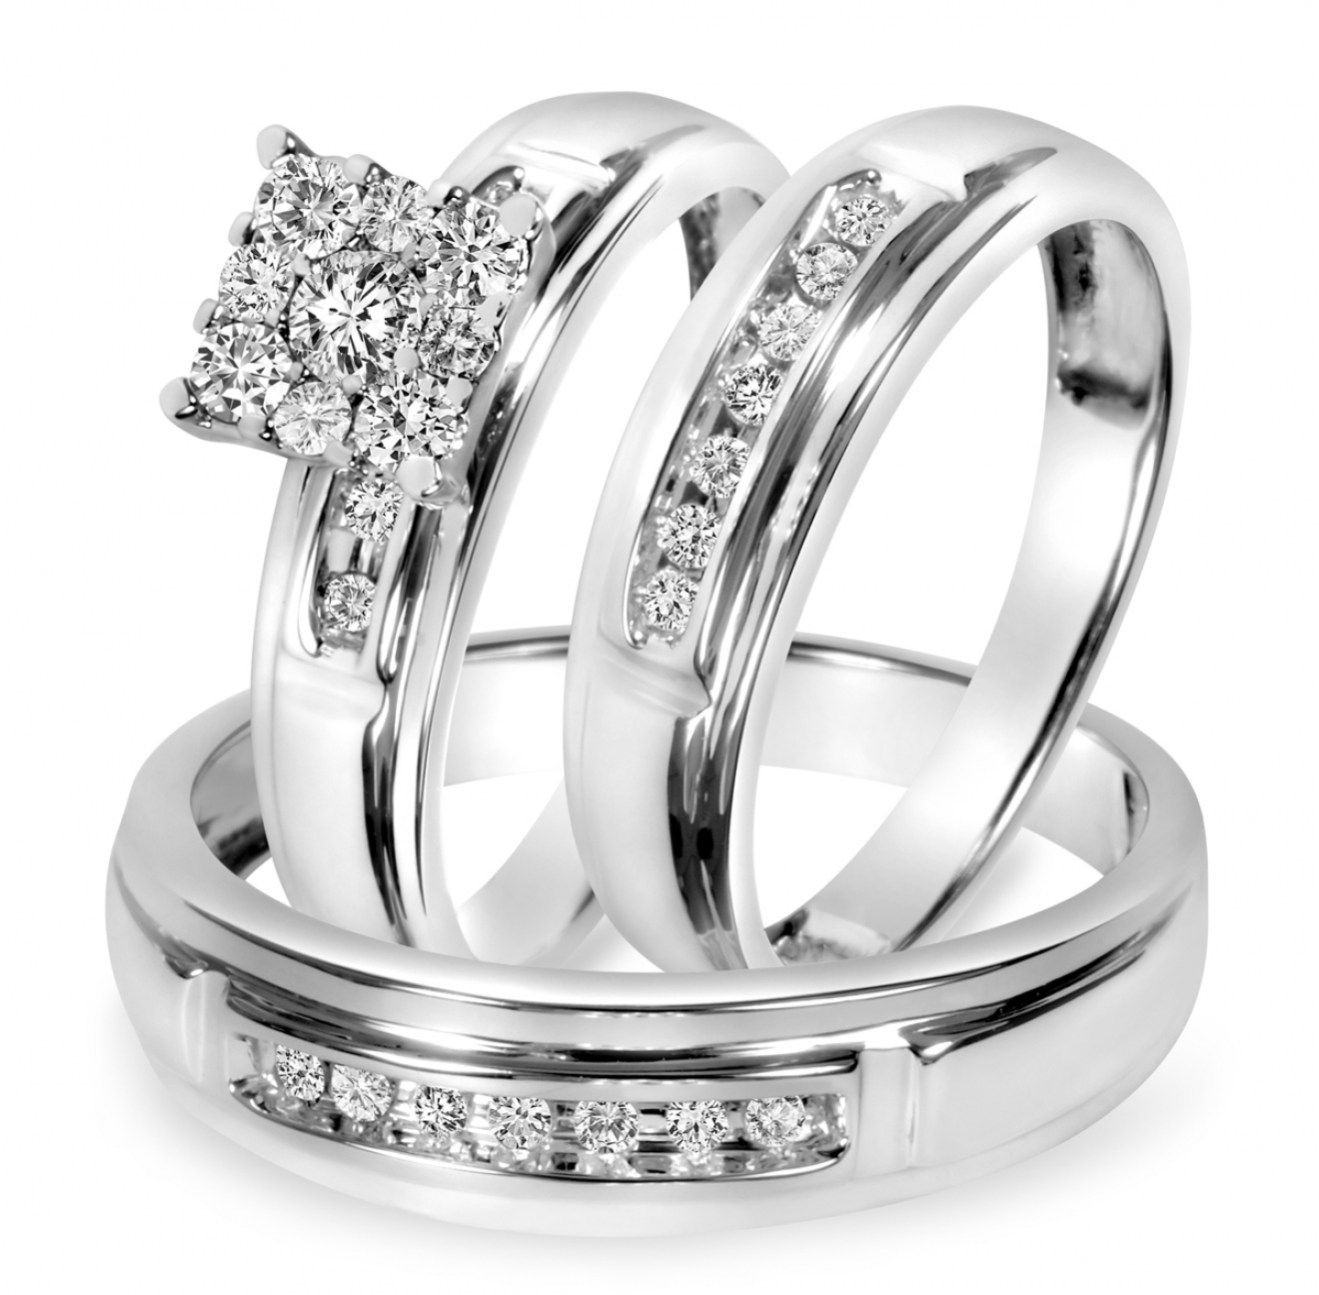 Trio Wedding Ring Sets Jared
 wedding rings trio wedding ring sets jared walmart wedding